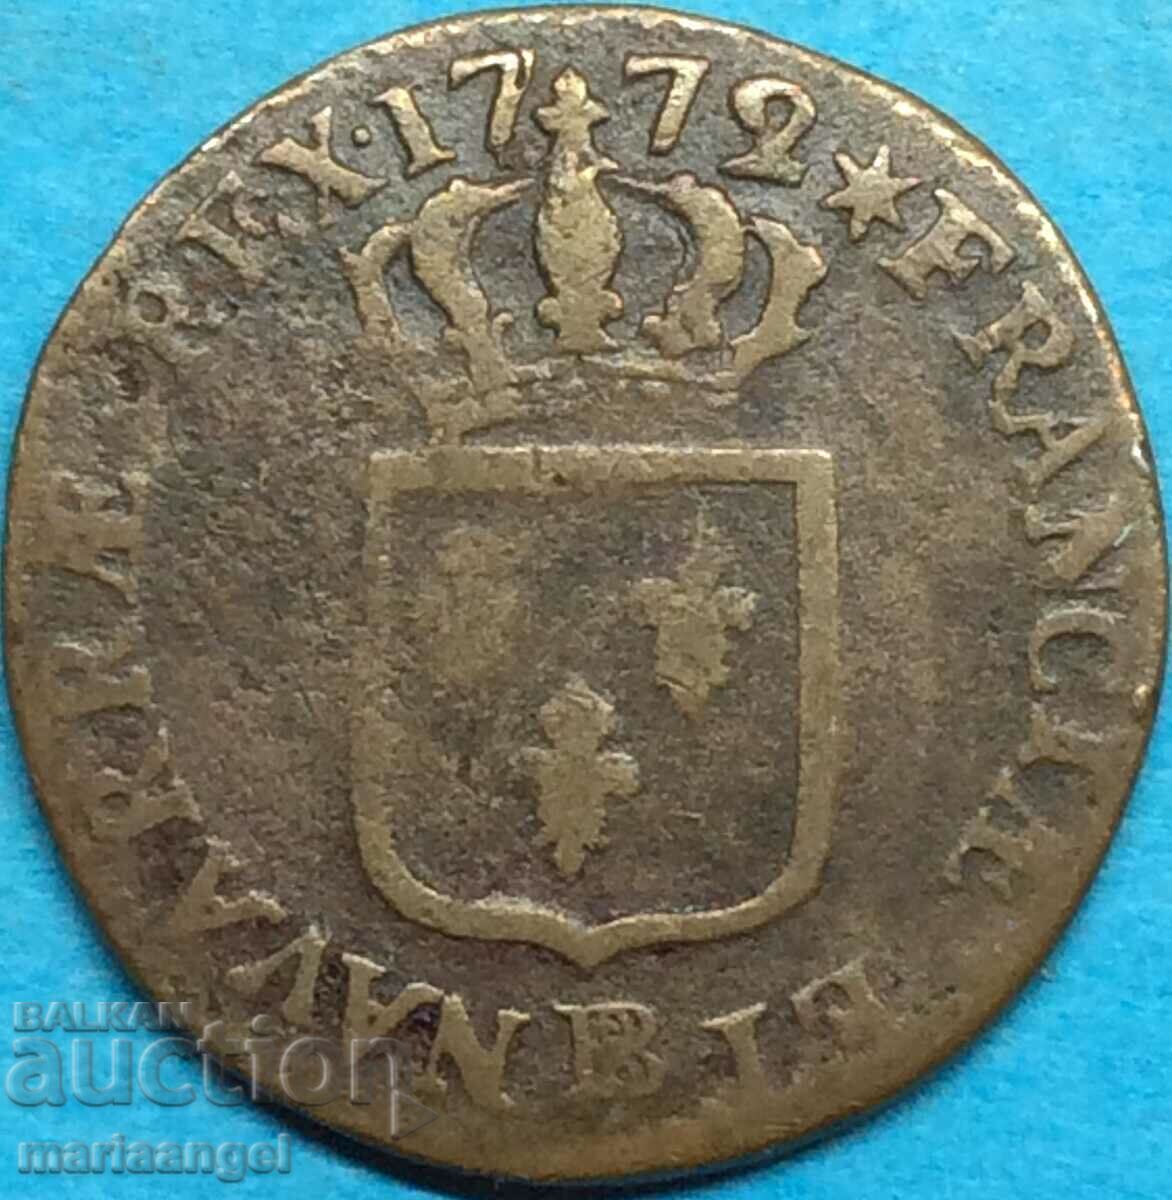 Γαλλία 1 sol 1772 Ludov. XV χαλκός - σπάνιος